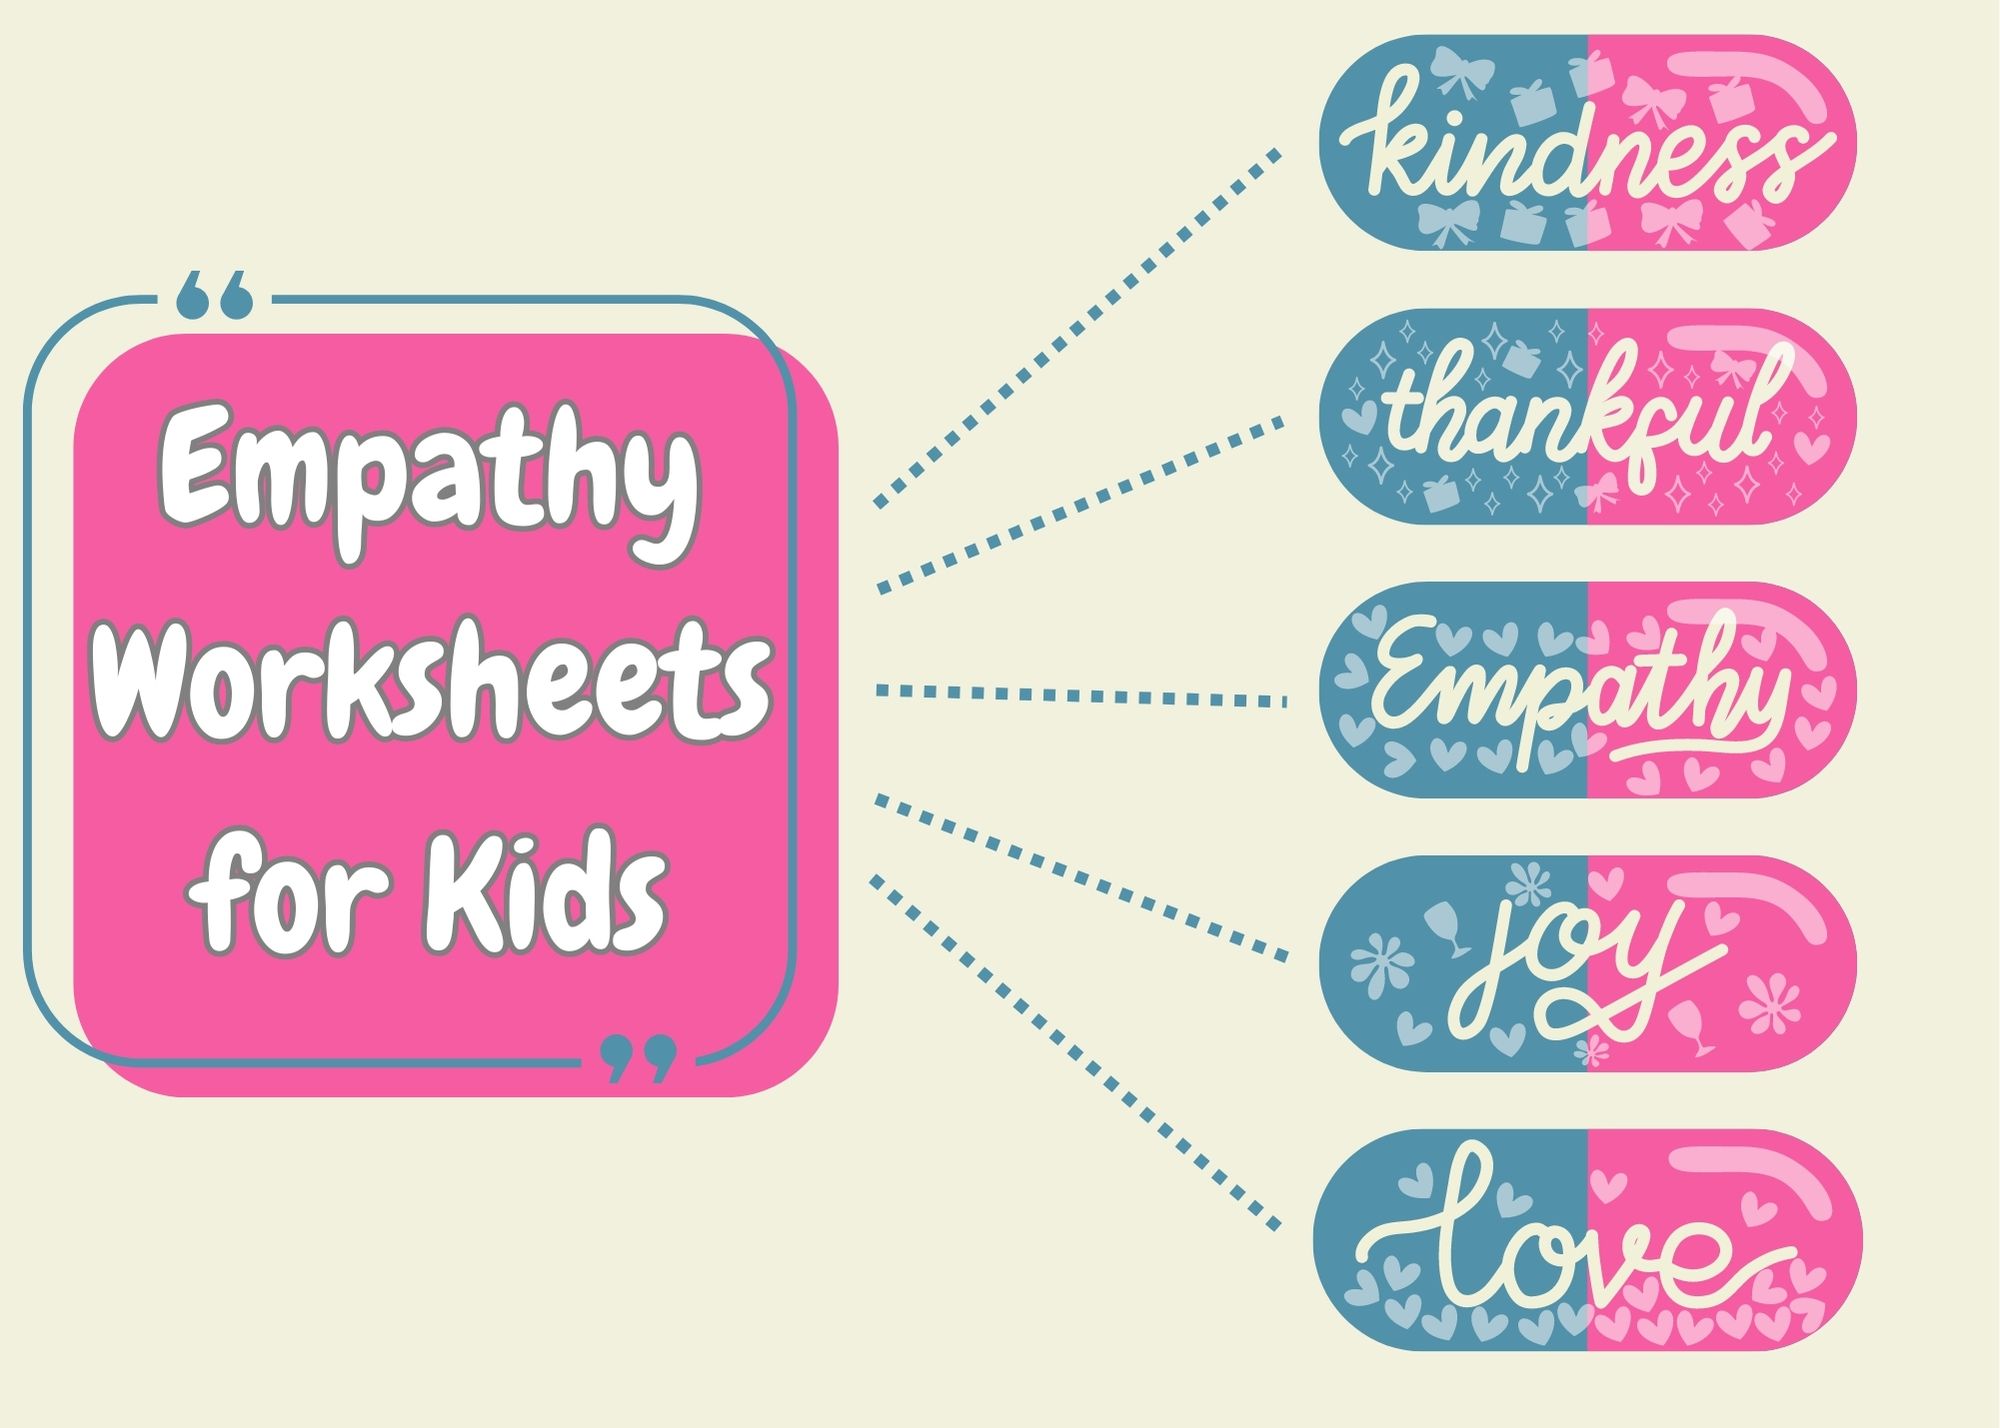 Empathy Worksheets for Kids